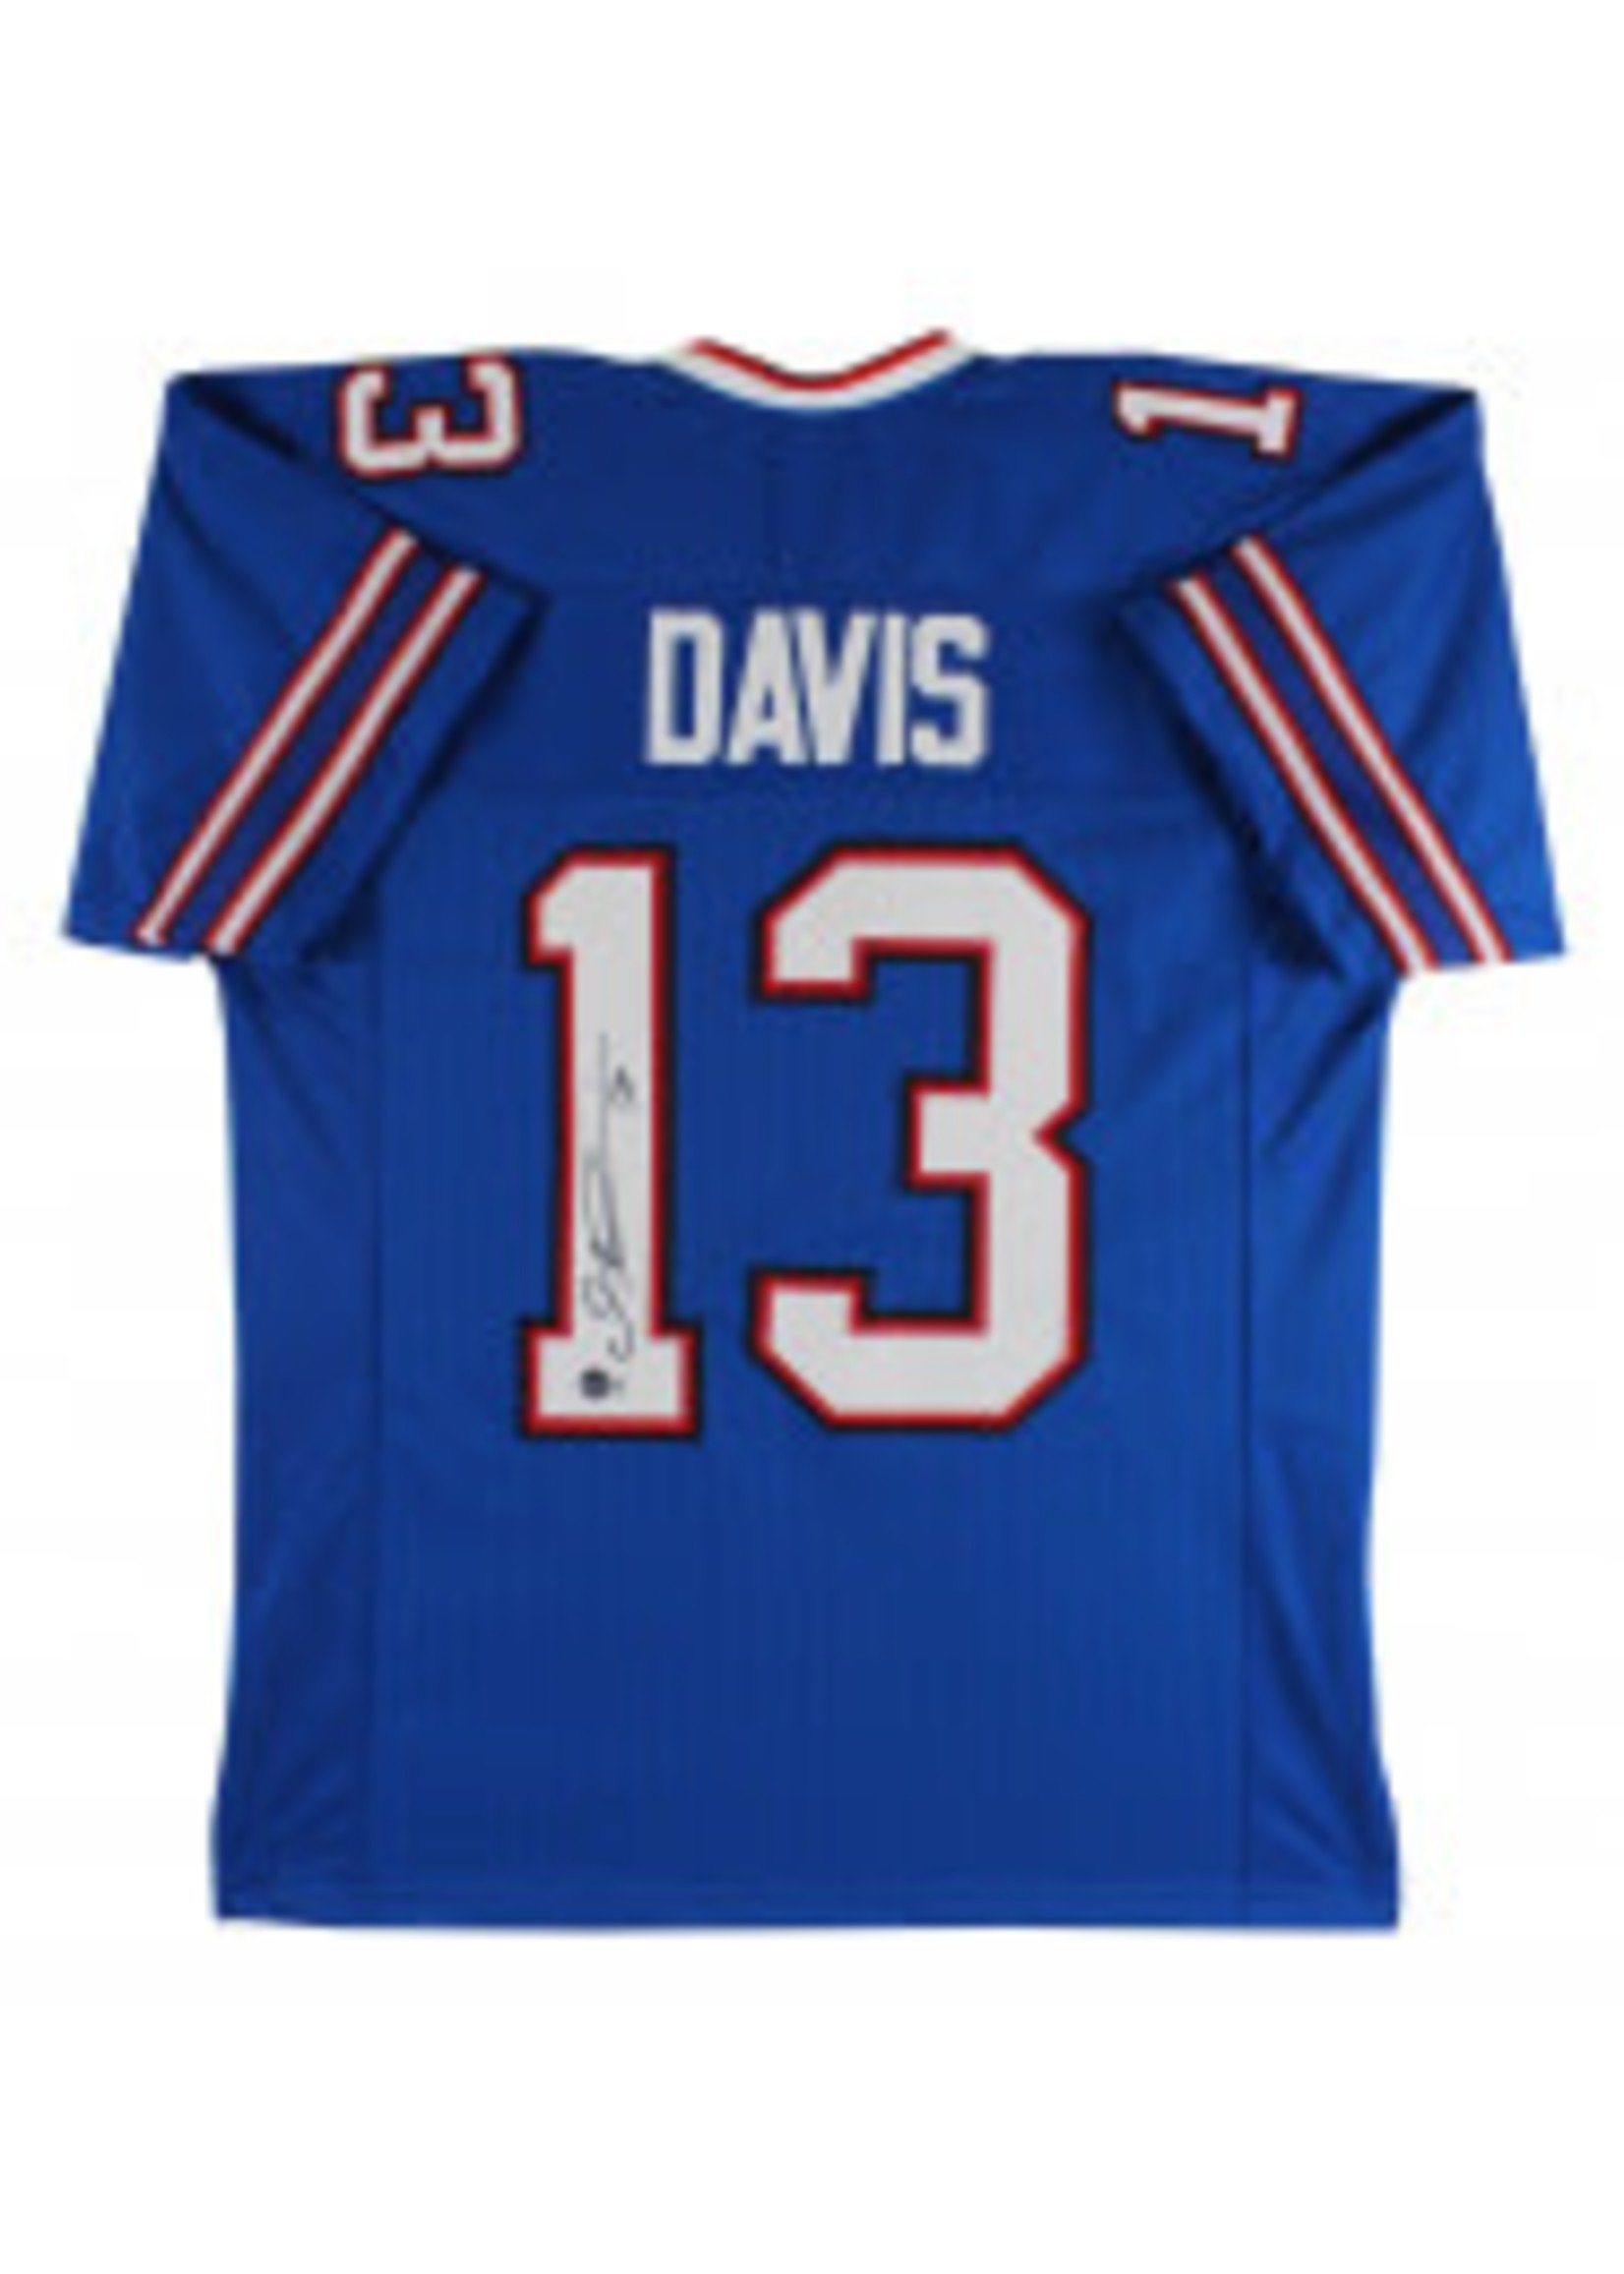 Davis Gabe jersey